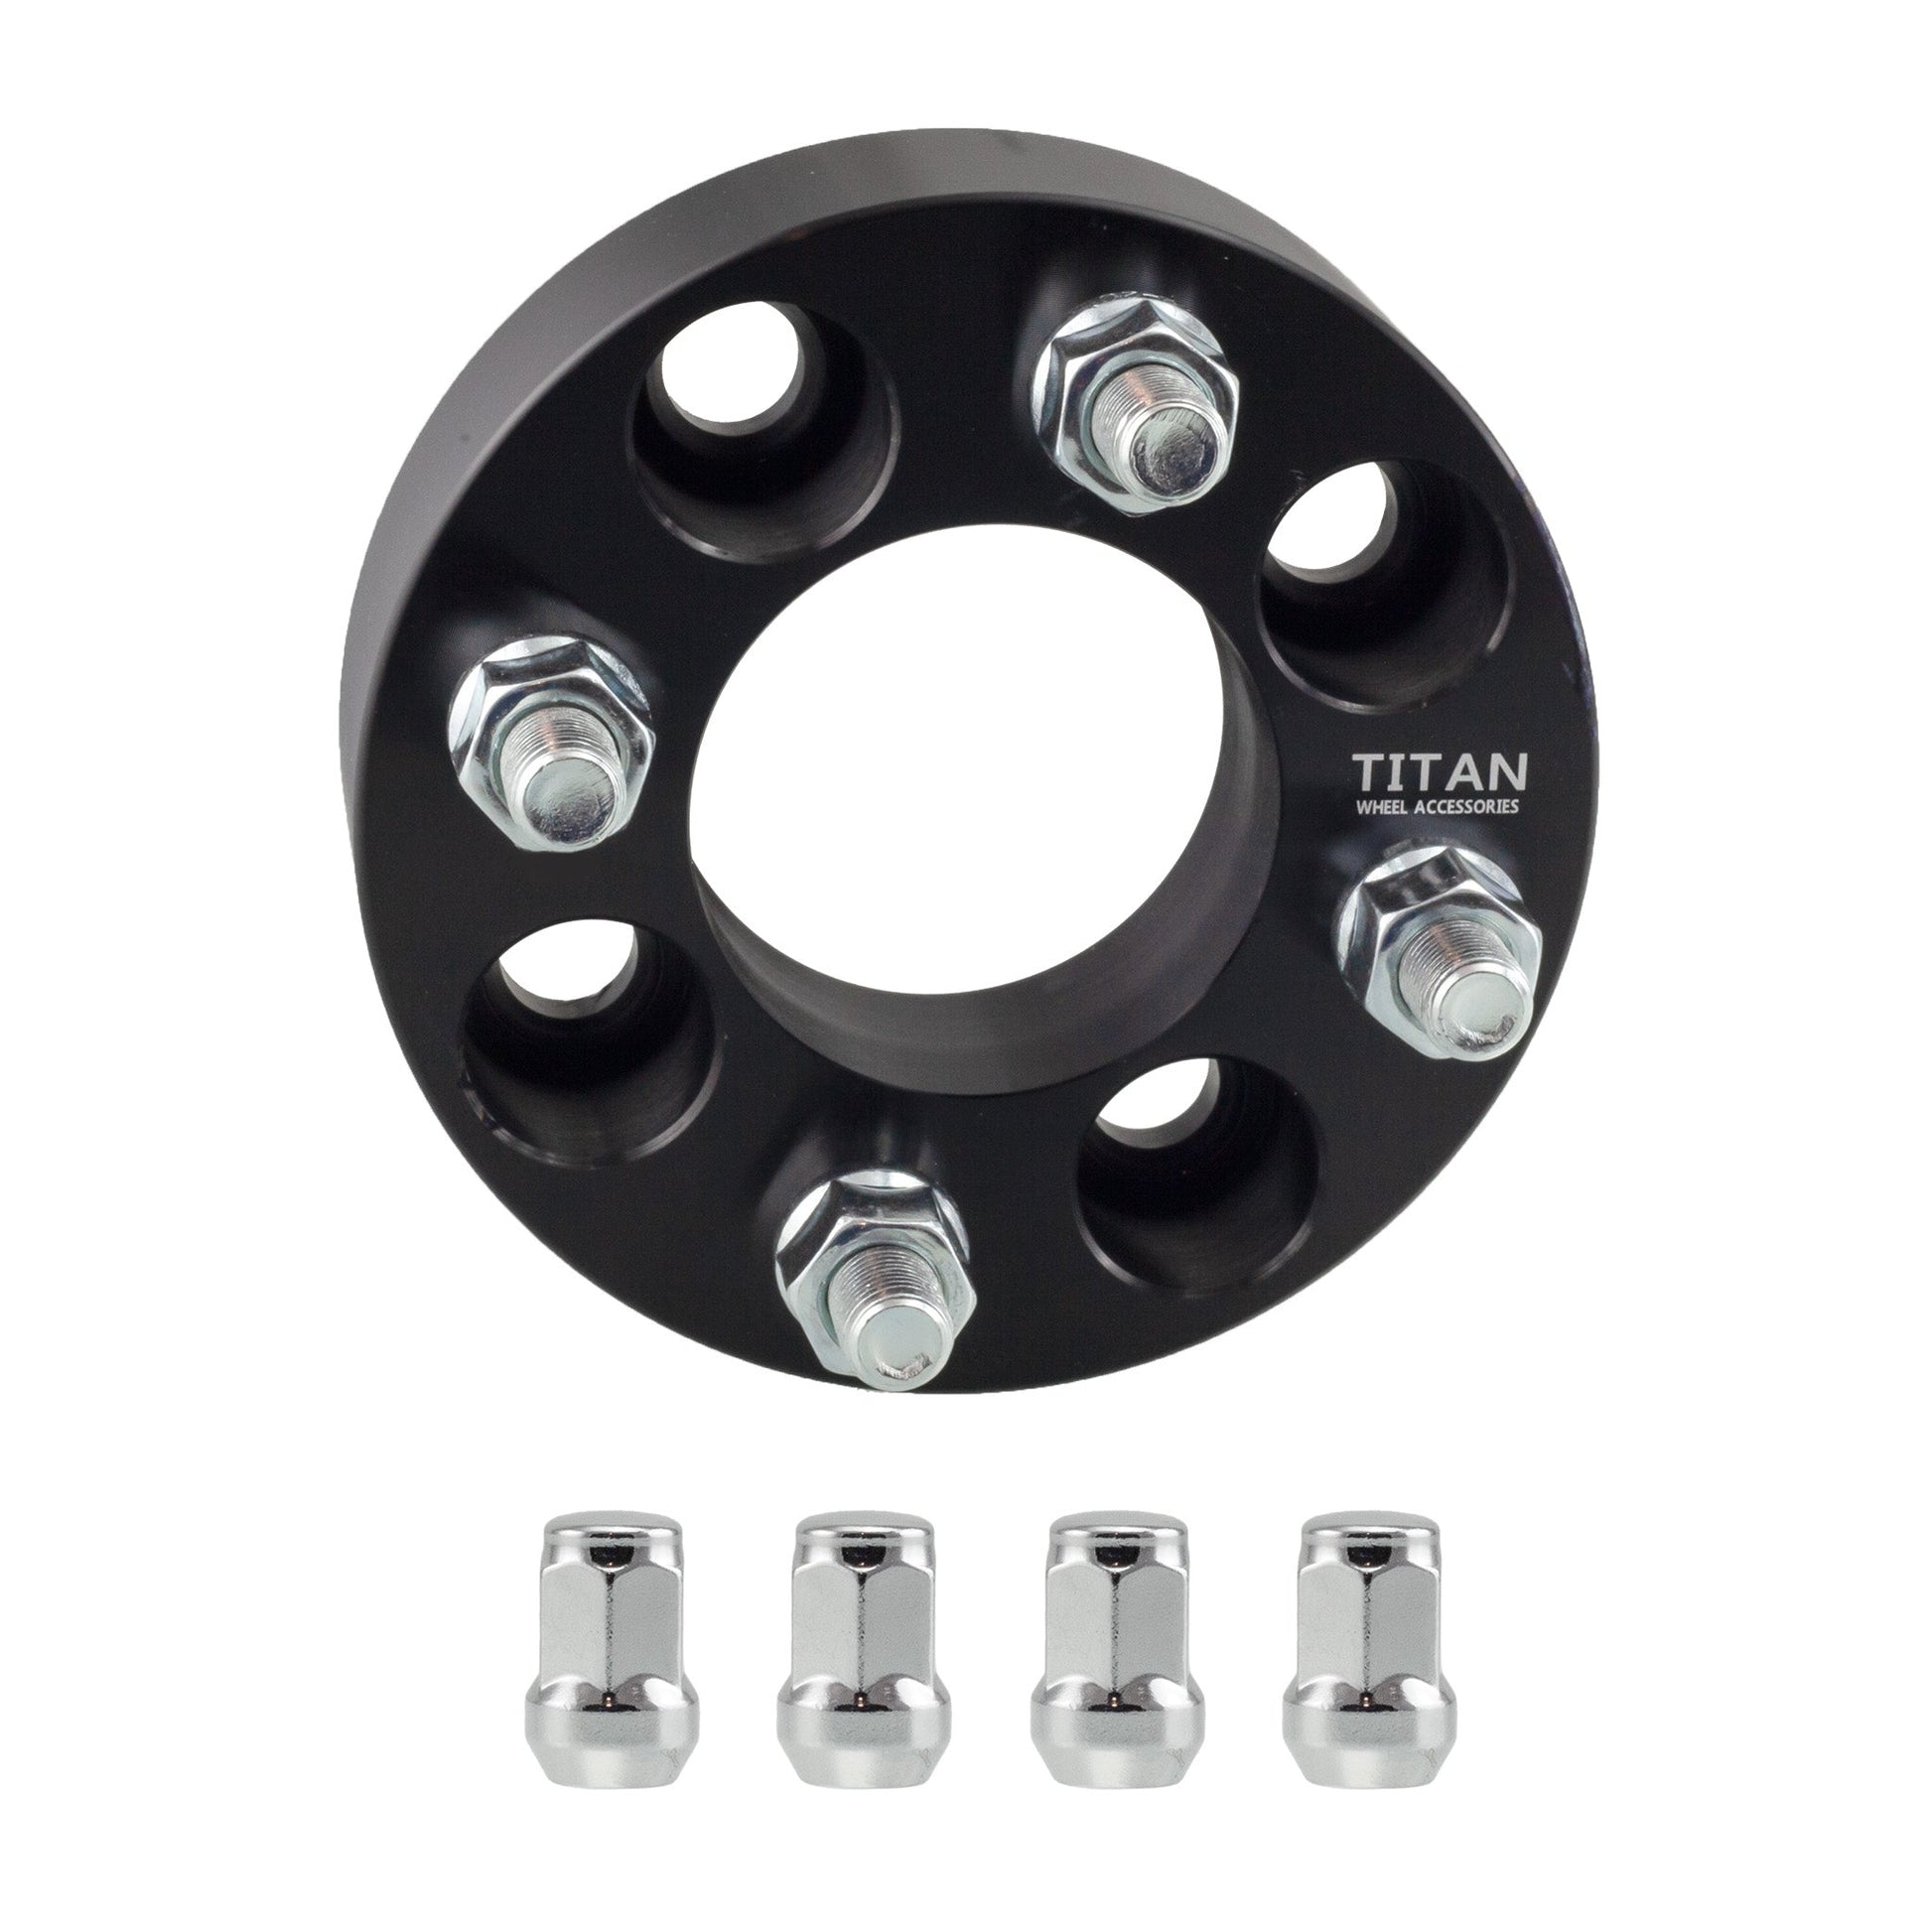 2" (50mm) Titan Wheel Spacers for EZ GO Club Car Golf Carts | 4x4 | 1/2x20 Studs | Titan Wheel Accessories